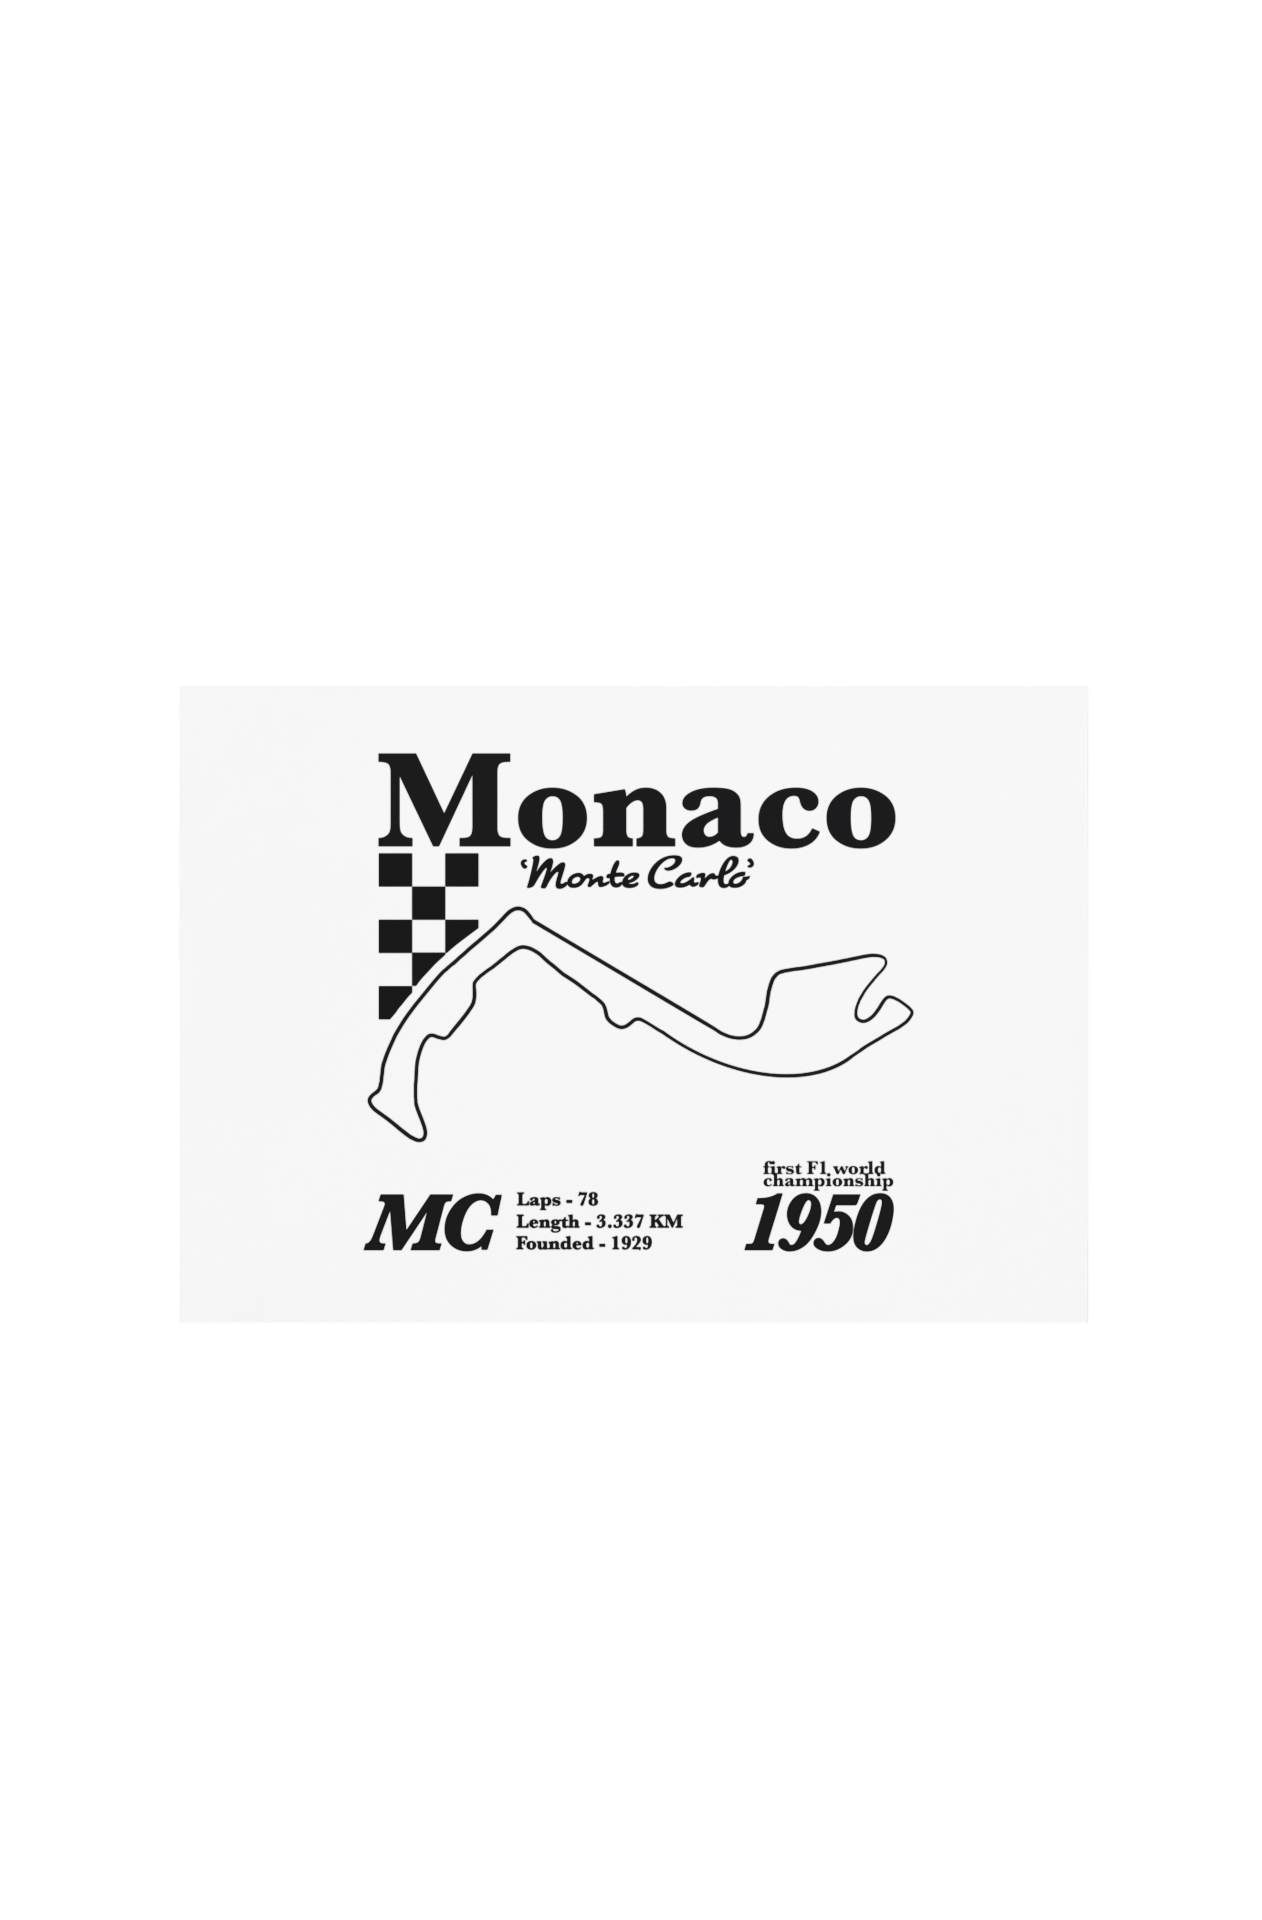 Monaco Race Track Print